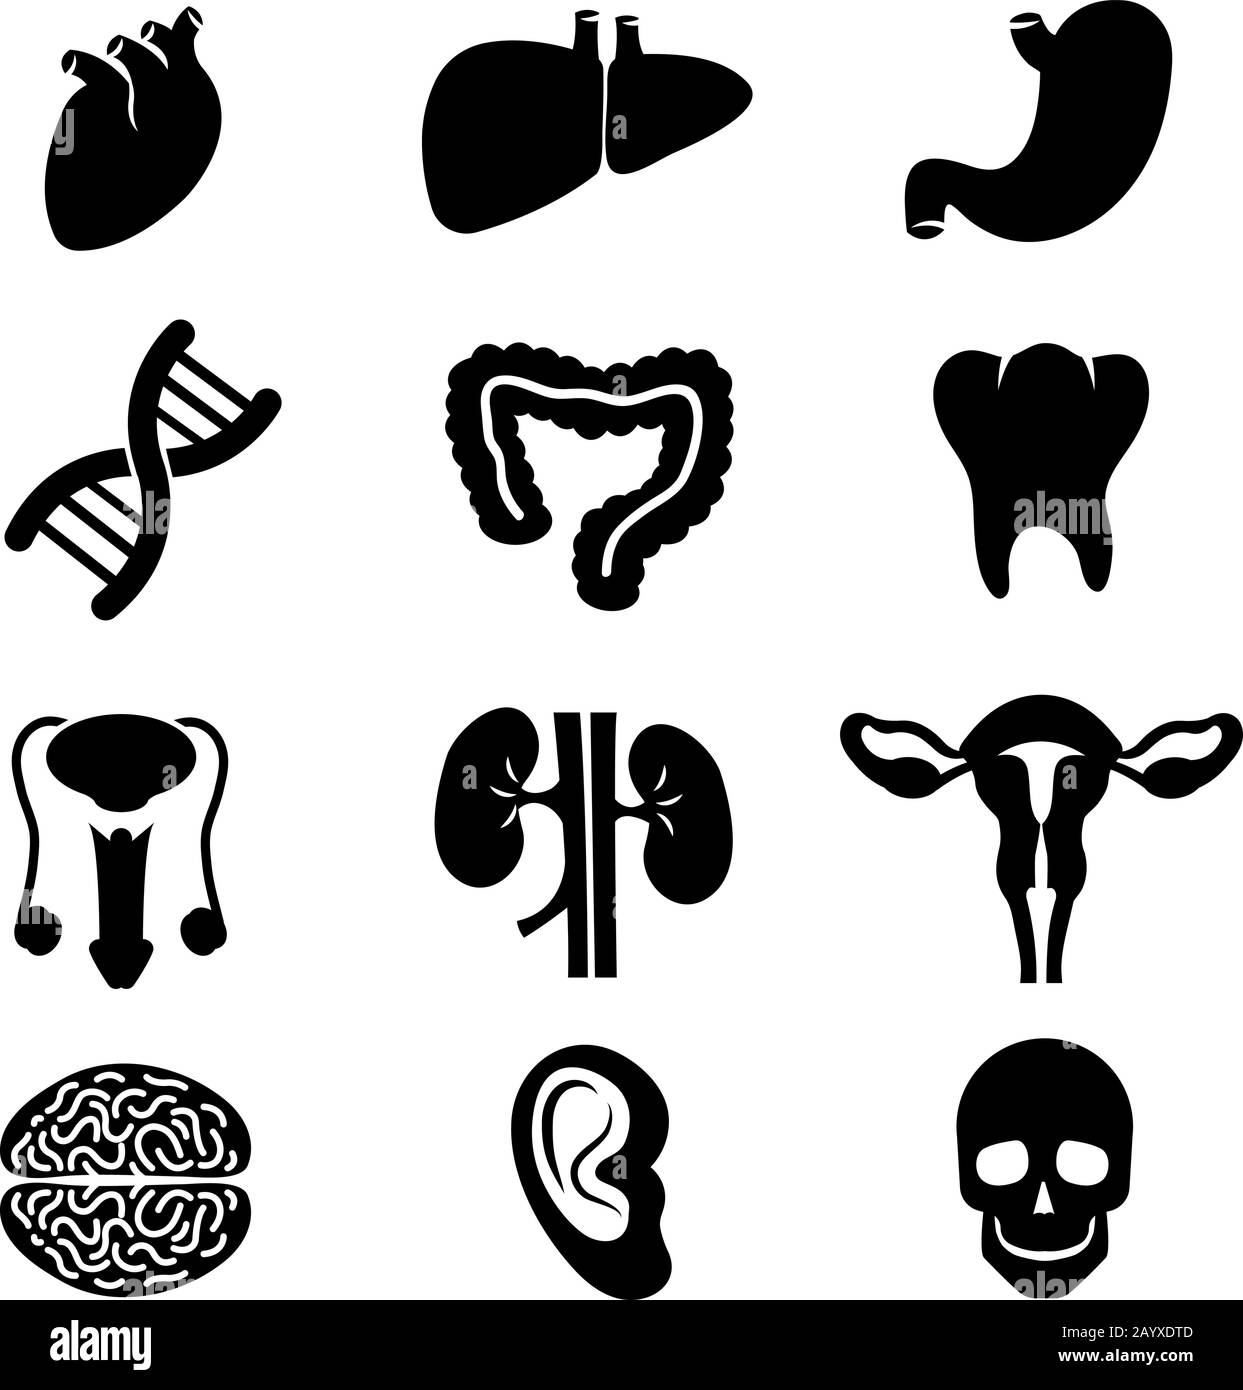 Les icônes noires vectorielles des organes humains sont définies. Organe cérébral organe humain et de santé organe estomac rein et coeur illustration Illustration de Vecteur